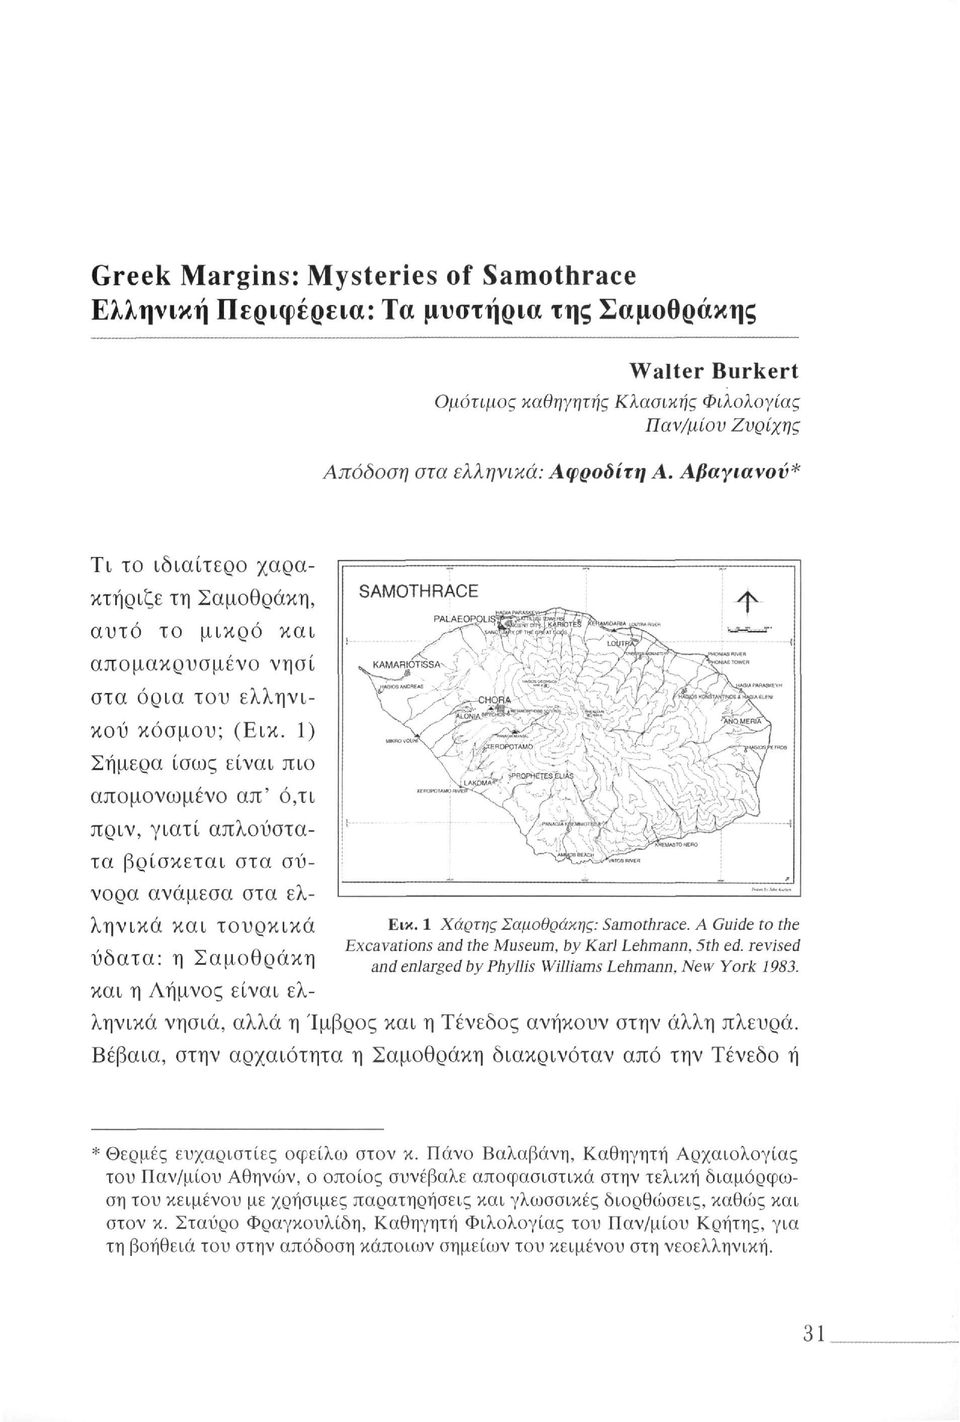 1) Σήμερα ίσως είναι πιο απομονωμένο απ' ό,τι πριν, γιατί απλούστατα βρίσκεται στα σύνορα ανάμεσα στα ελληνικά και τουρκικά Εικ. 1 Χάρτης Σαμοθράκης: Samothrace.